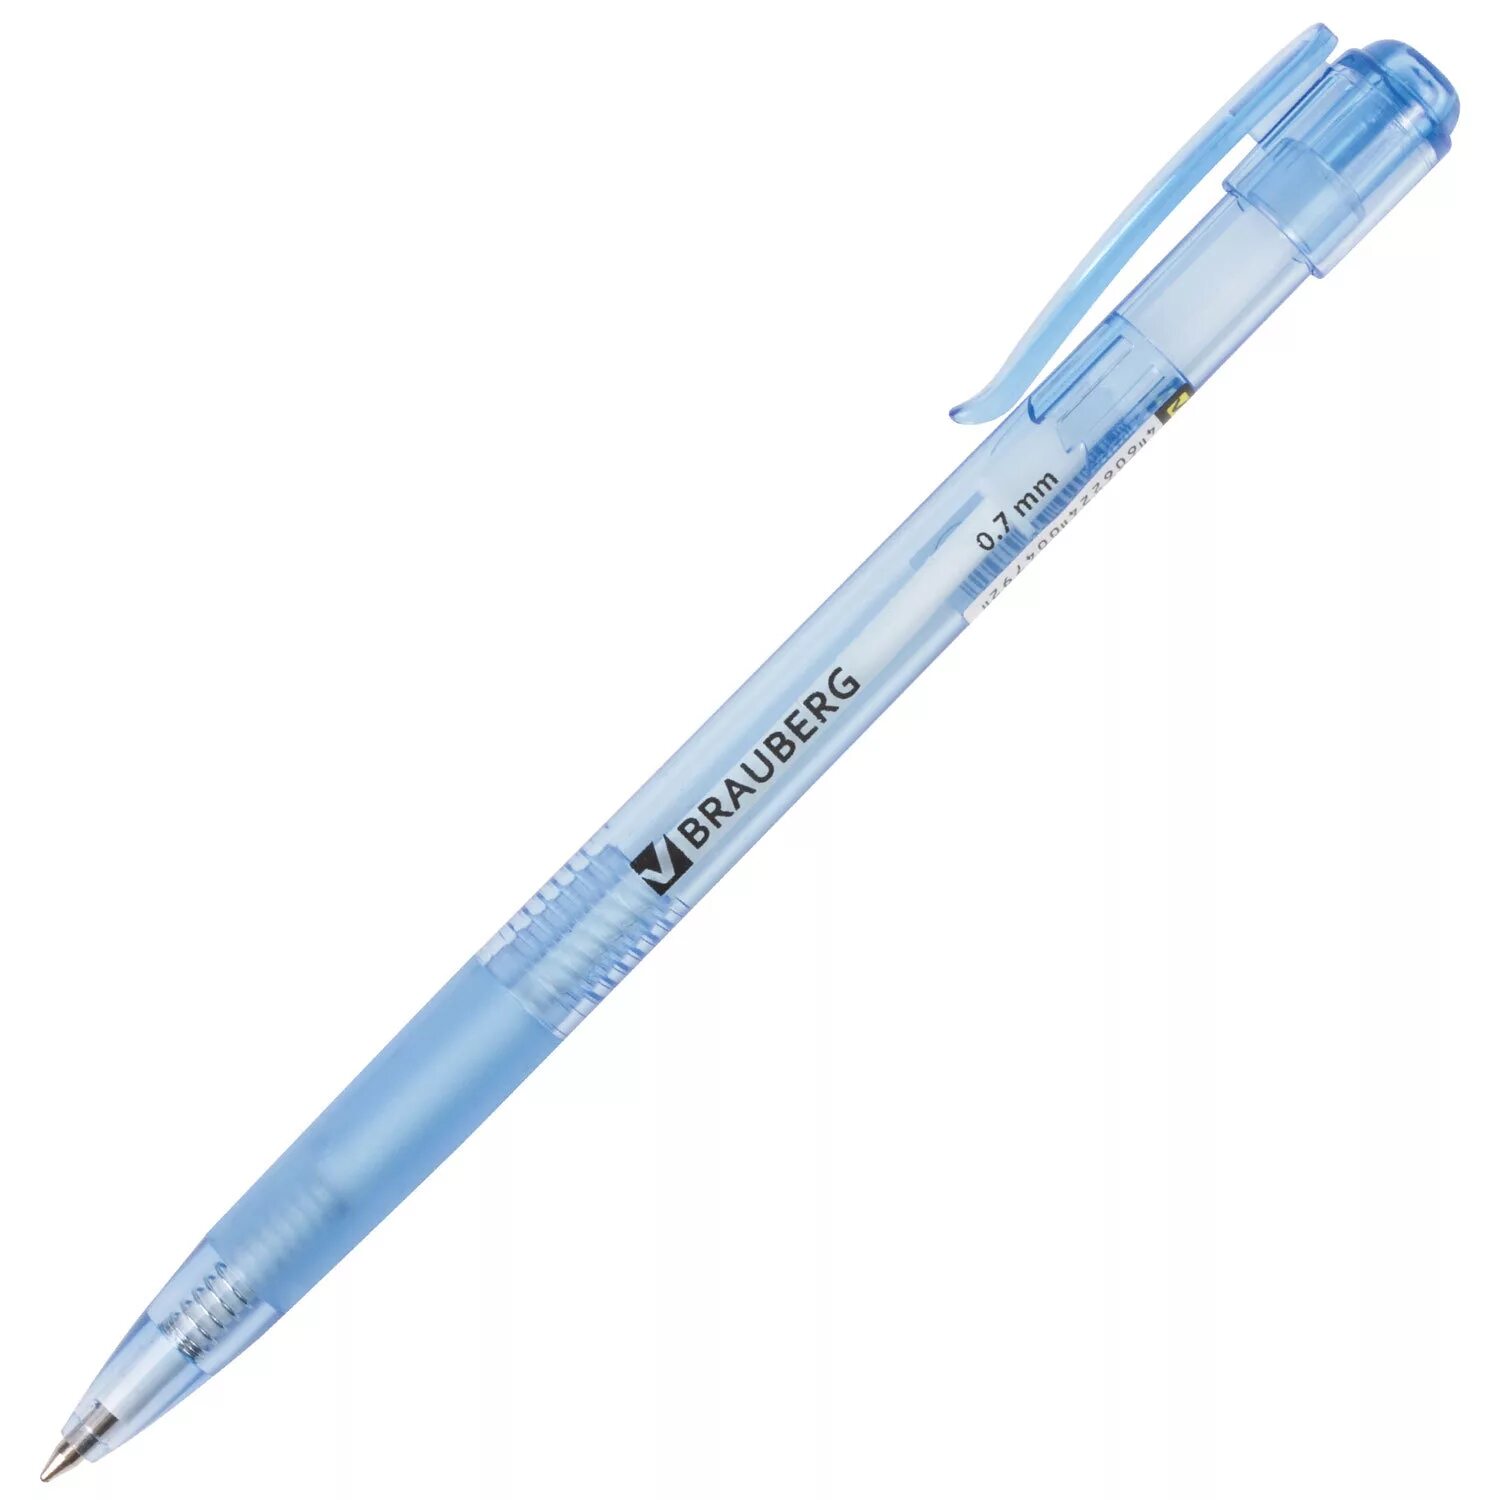 Ручка шариковая БРАУБЕРГ 0.7. Ручка БРАУБЕРГ 0.7 мм. Ручка шариковая БРАУБЕРГ 0.7 мм. Ручки БРАУБЕРГ 0.7 мм автоматическая.